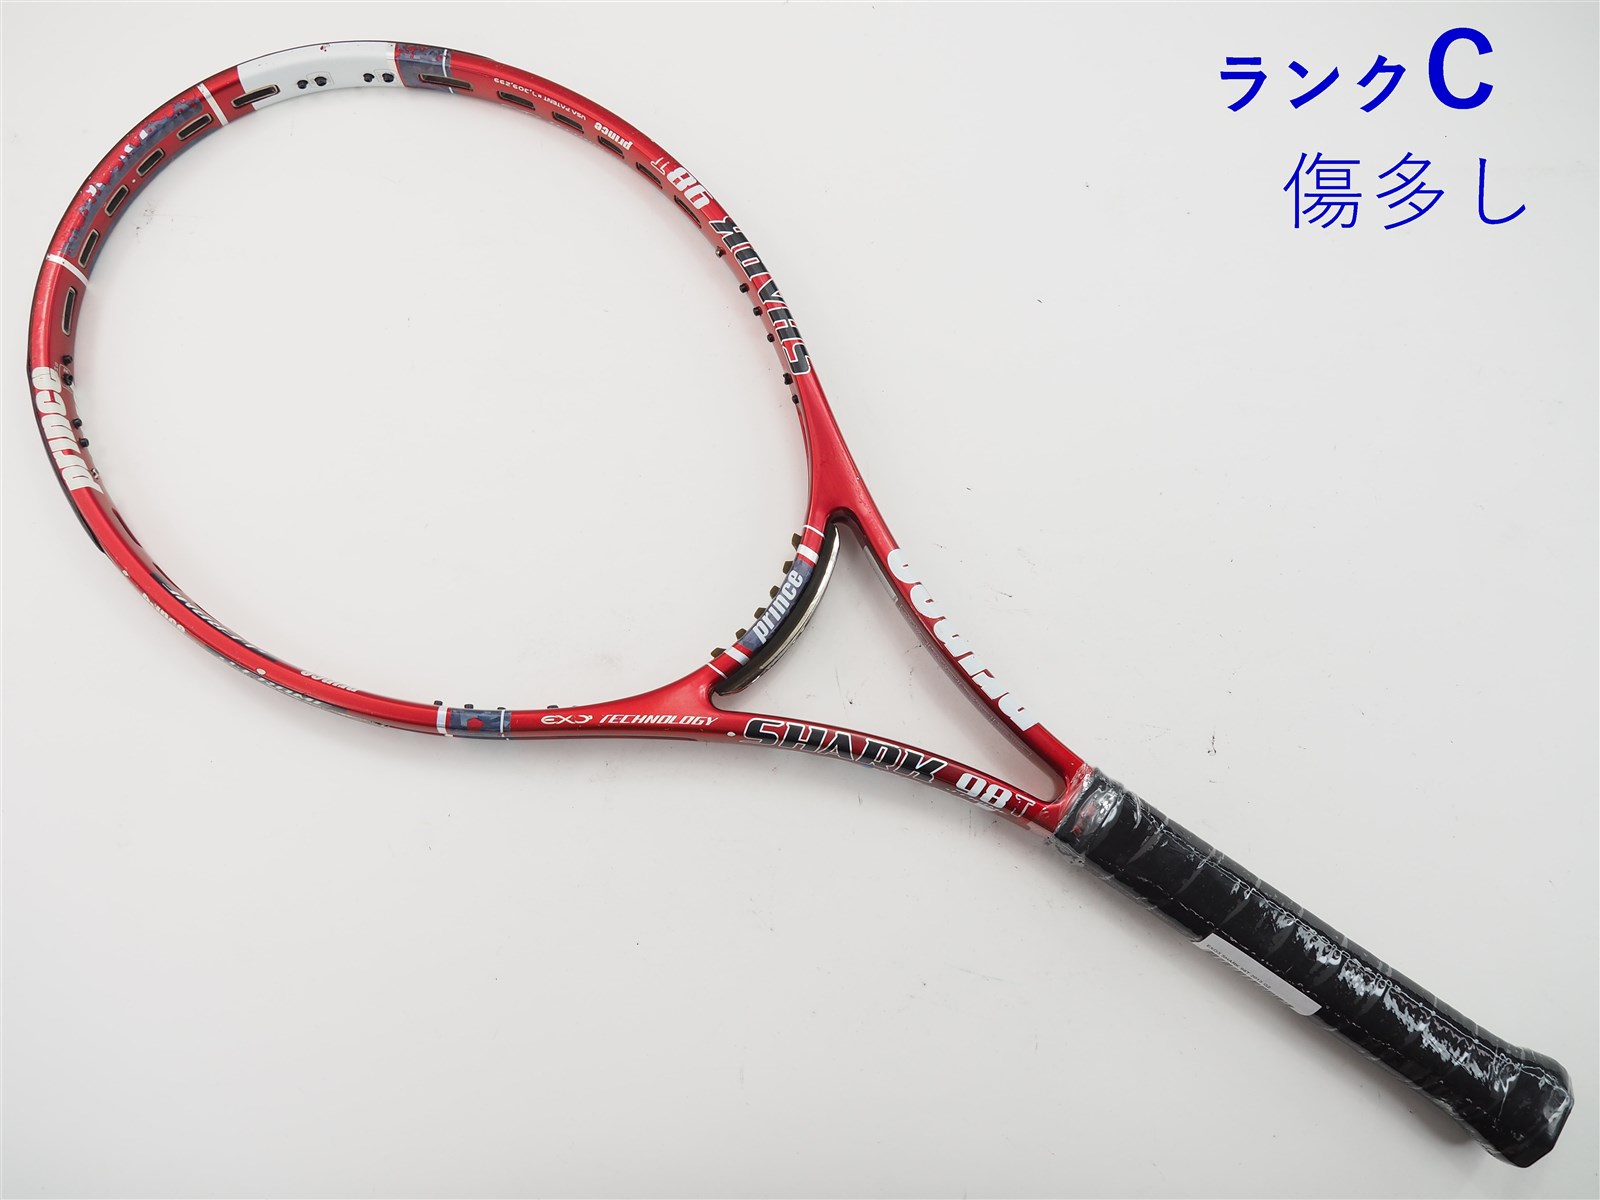 テニスラケット プリンス イーエックスオースリー ハーネット 100 2012年モデル (G2)PRINCE EXO3 HARNET 100 2012G2装着グリップ